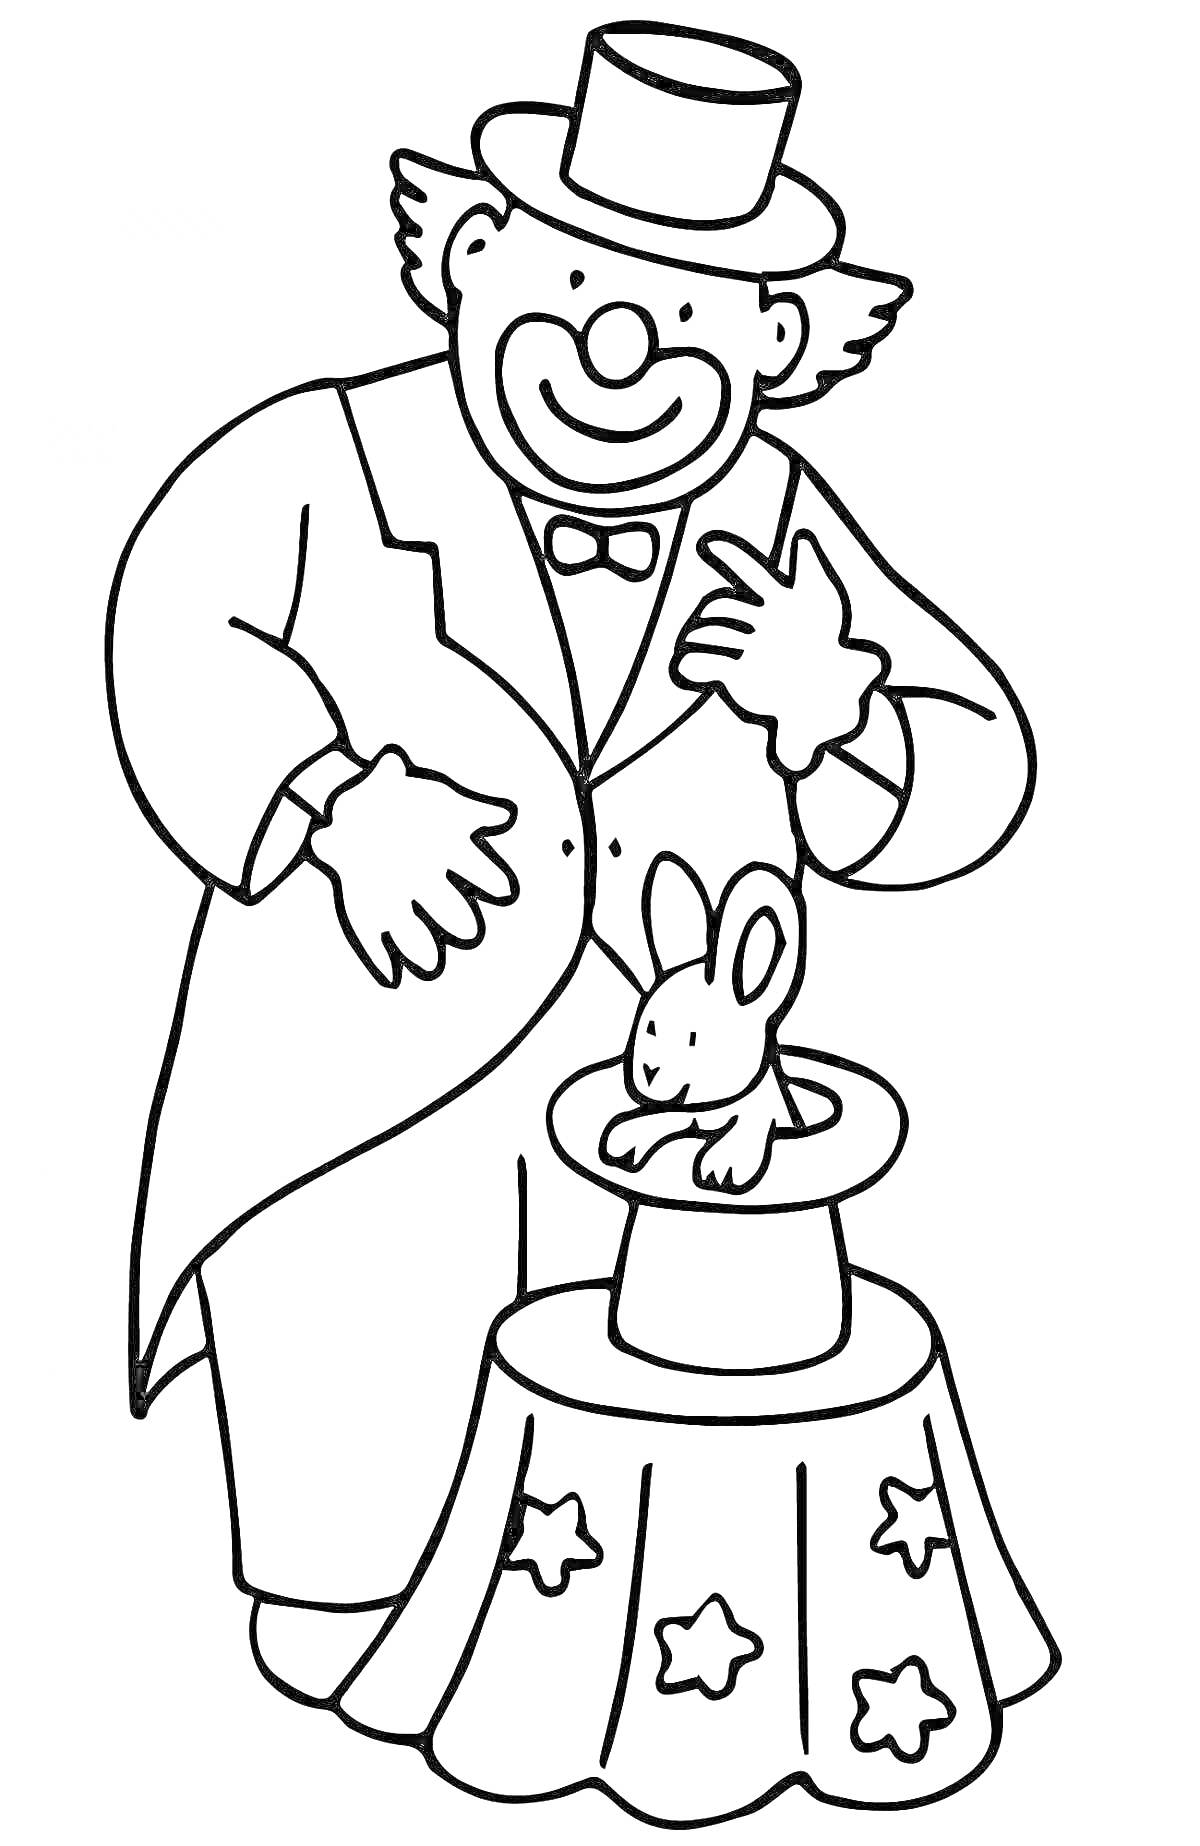  Клоун с цилиндром показывает фокус с выниманием кролика из шляпы на столе со скатертью с звездами